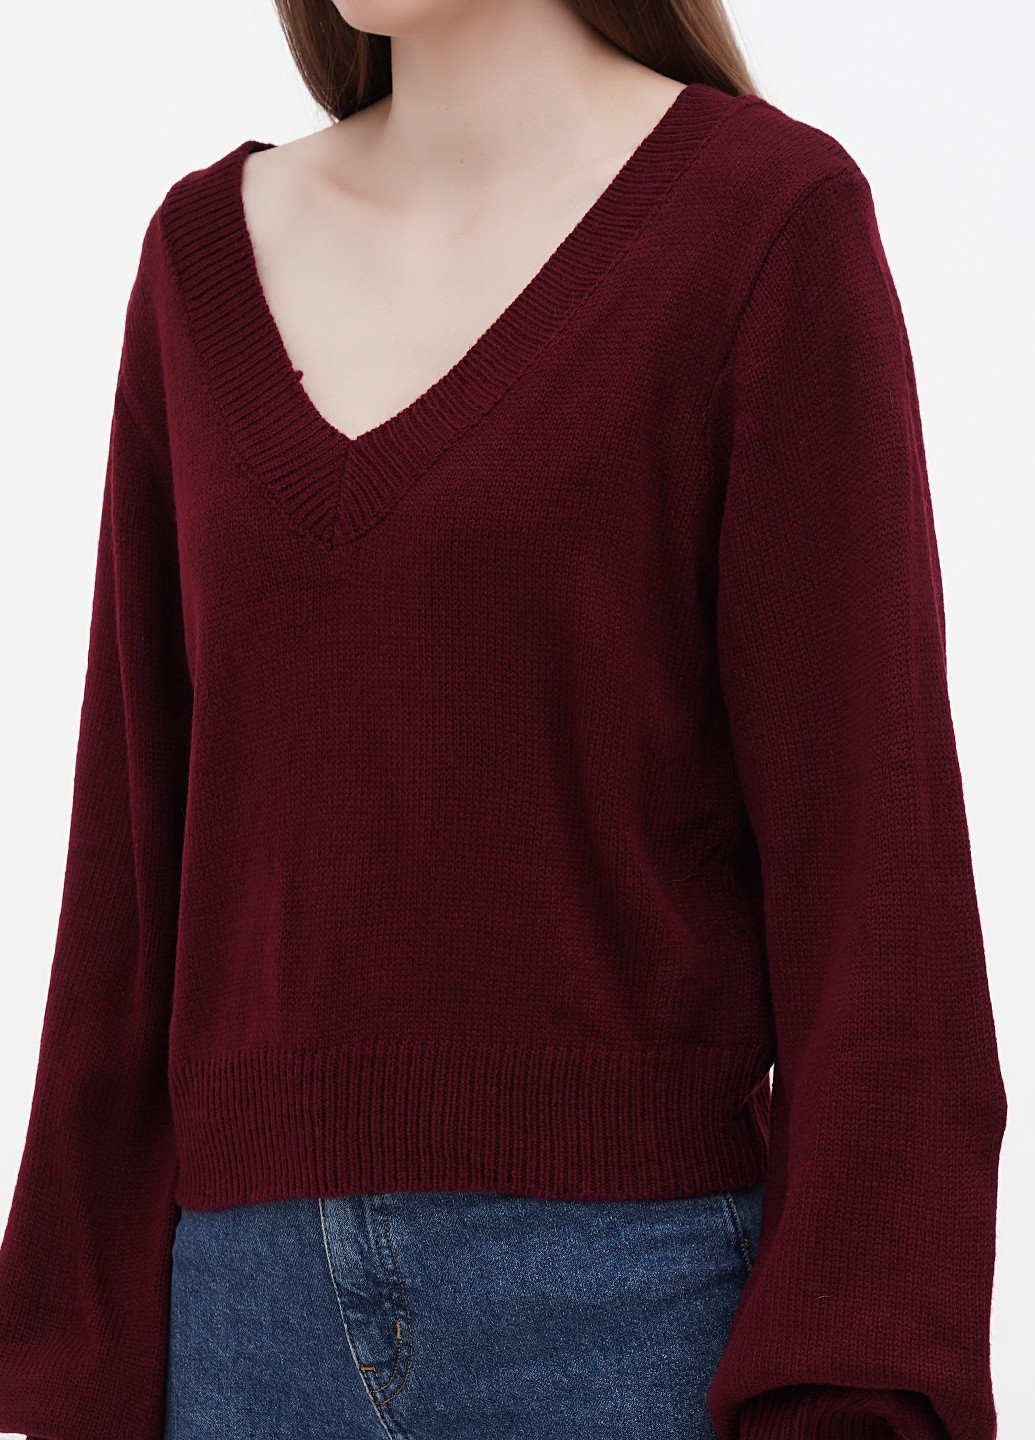 Бордовый демисезонный пуловер пуловер ZAFUL